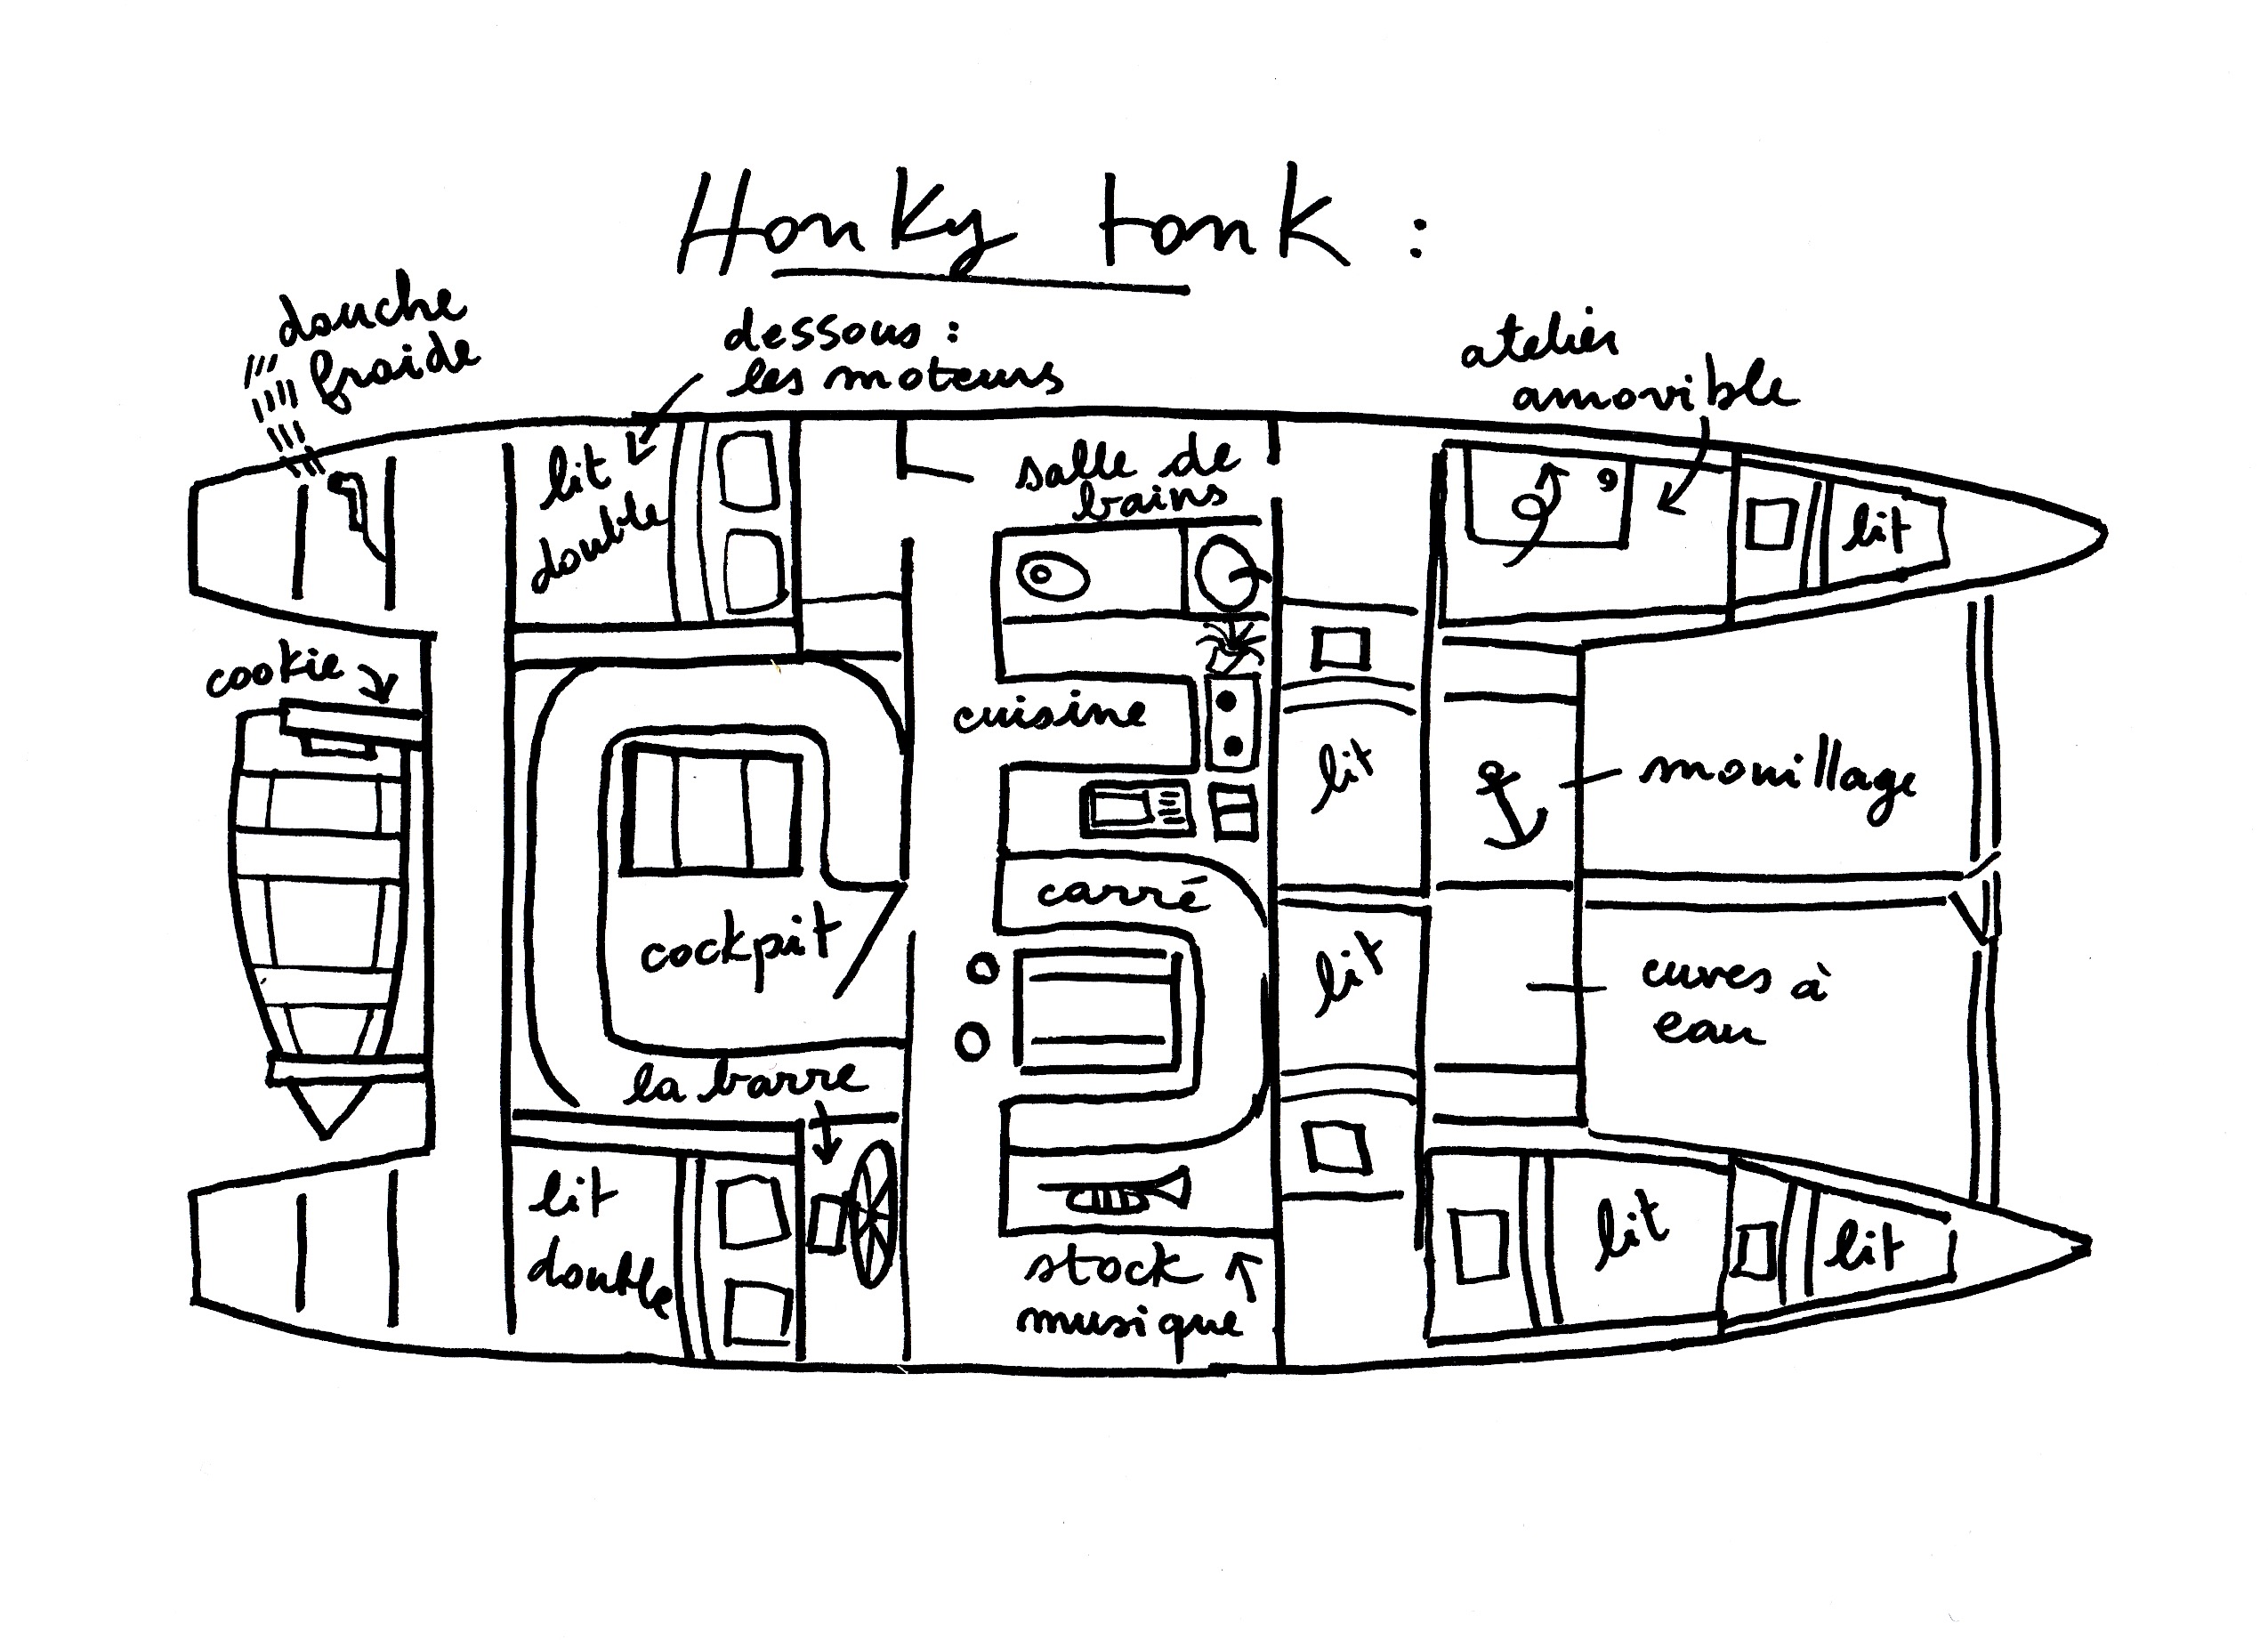 plan de l'intérieur de Honky tonk